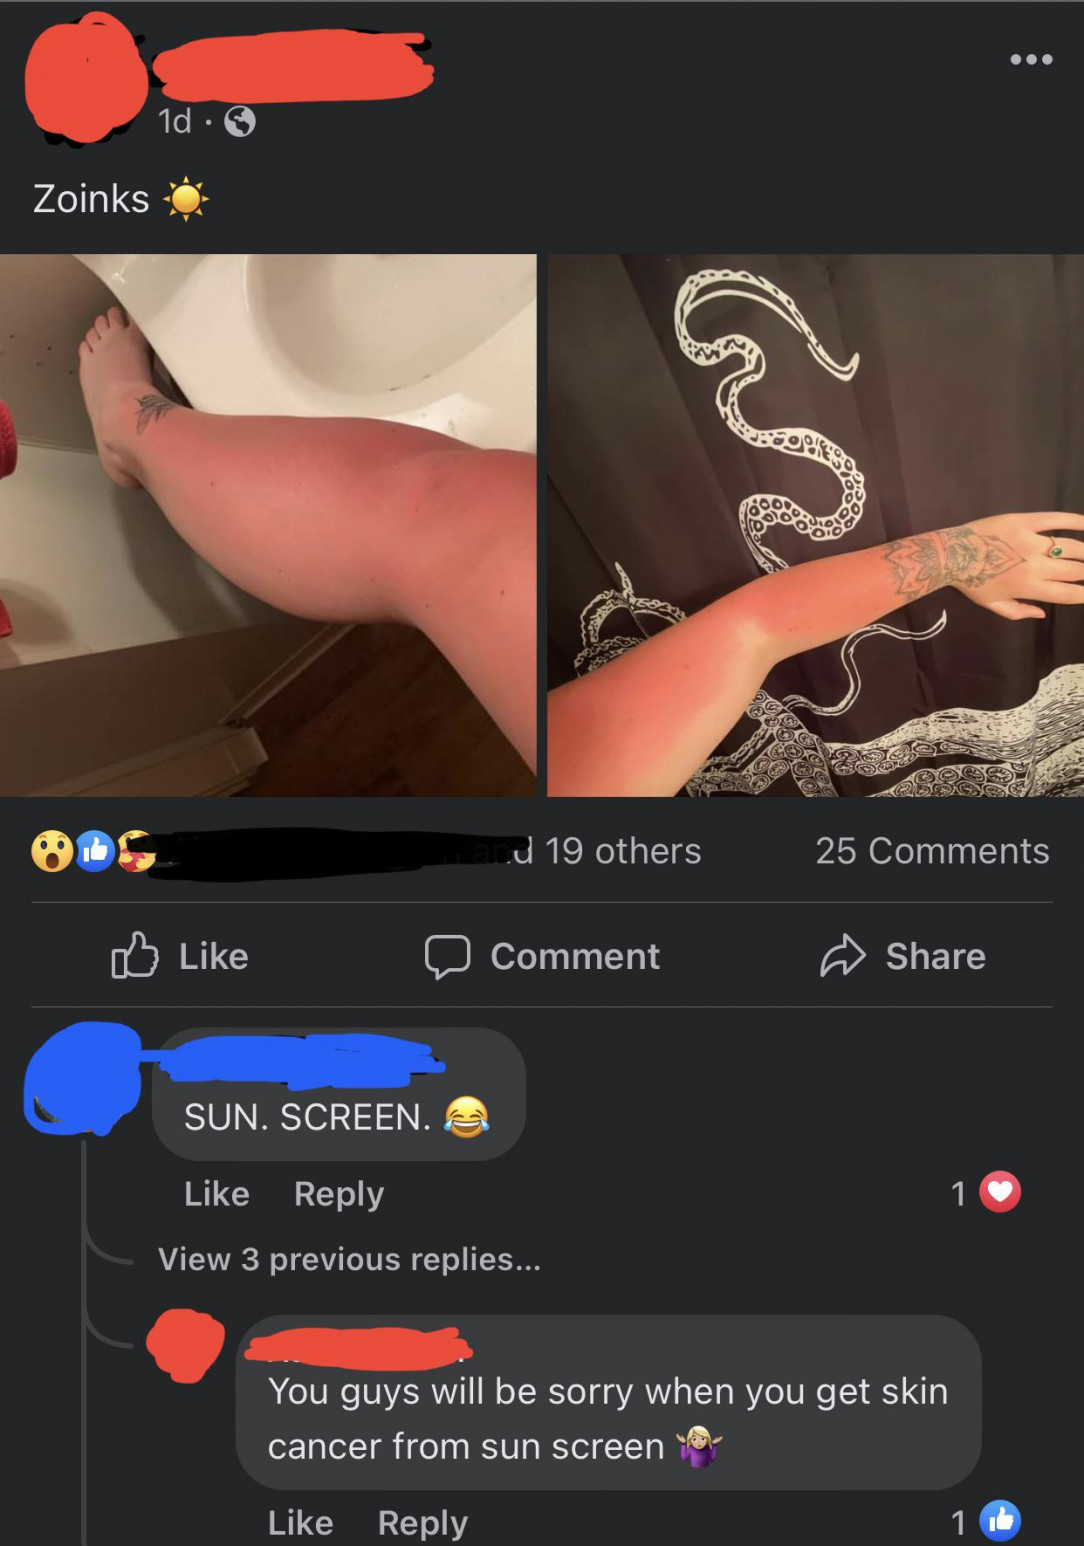 Sunburn and sunscreen